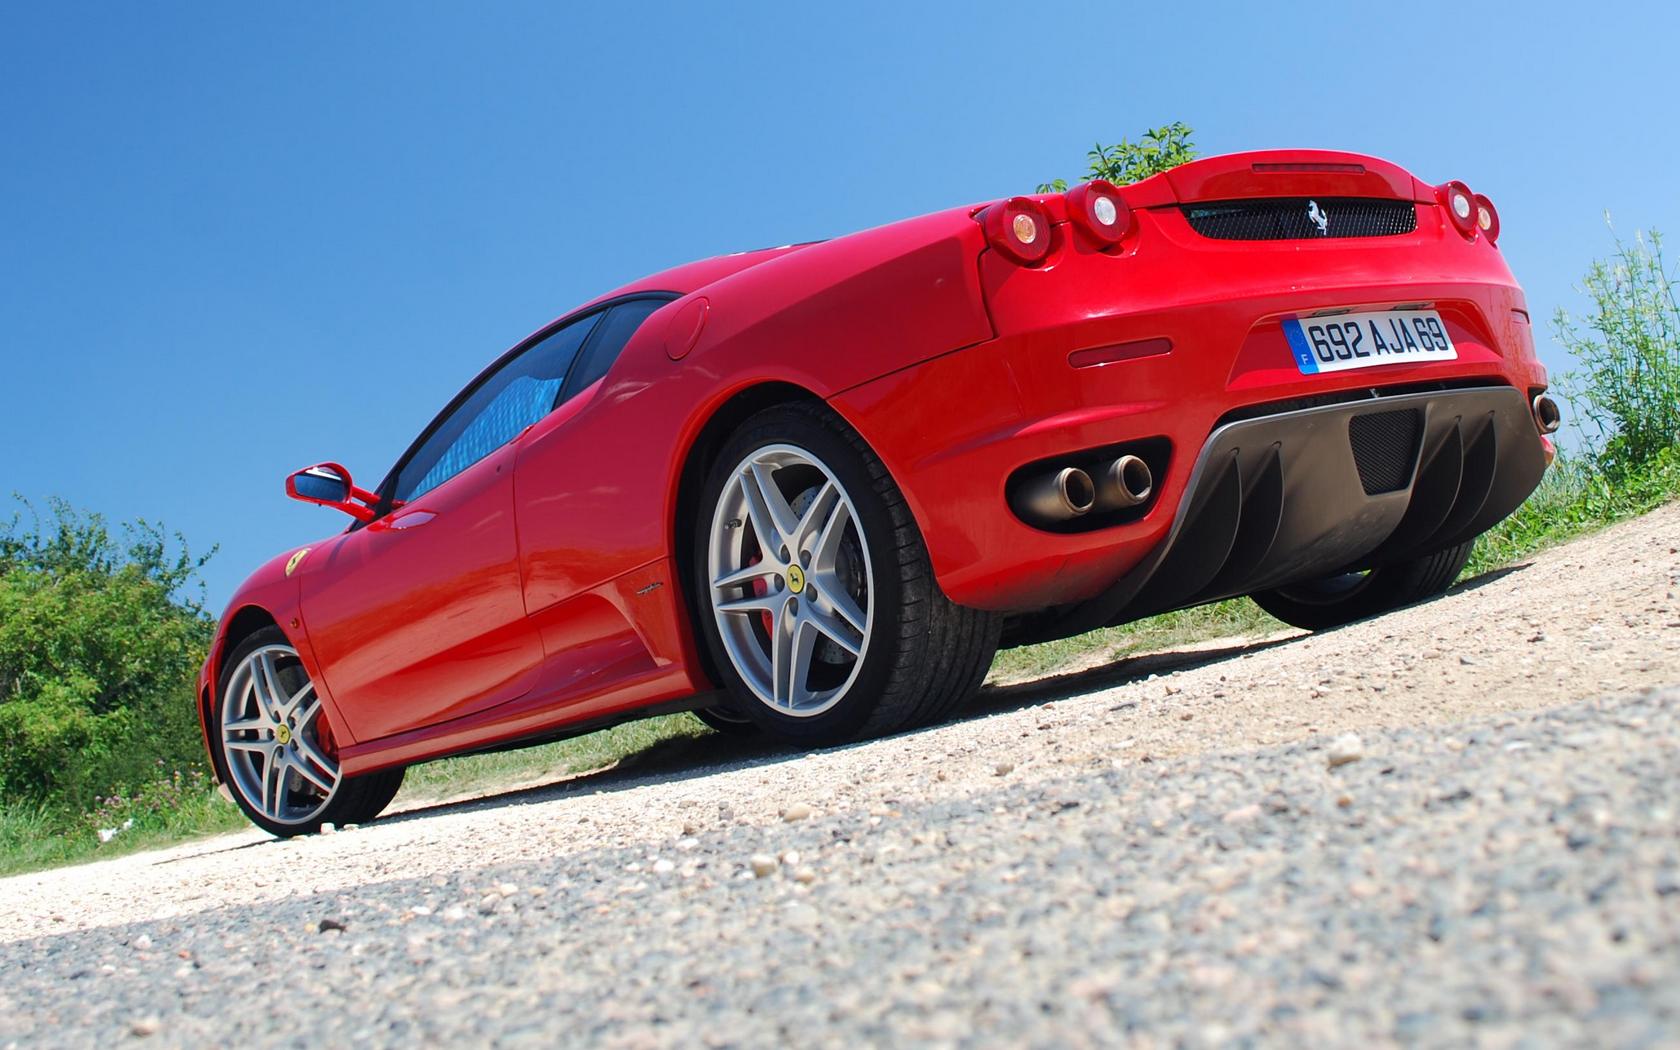 Download full size Ferrari wallpaper / Cars / 1680x1050